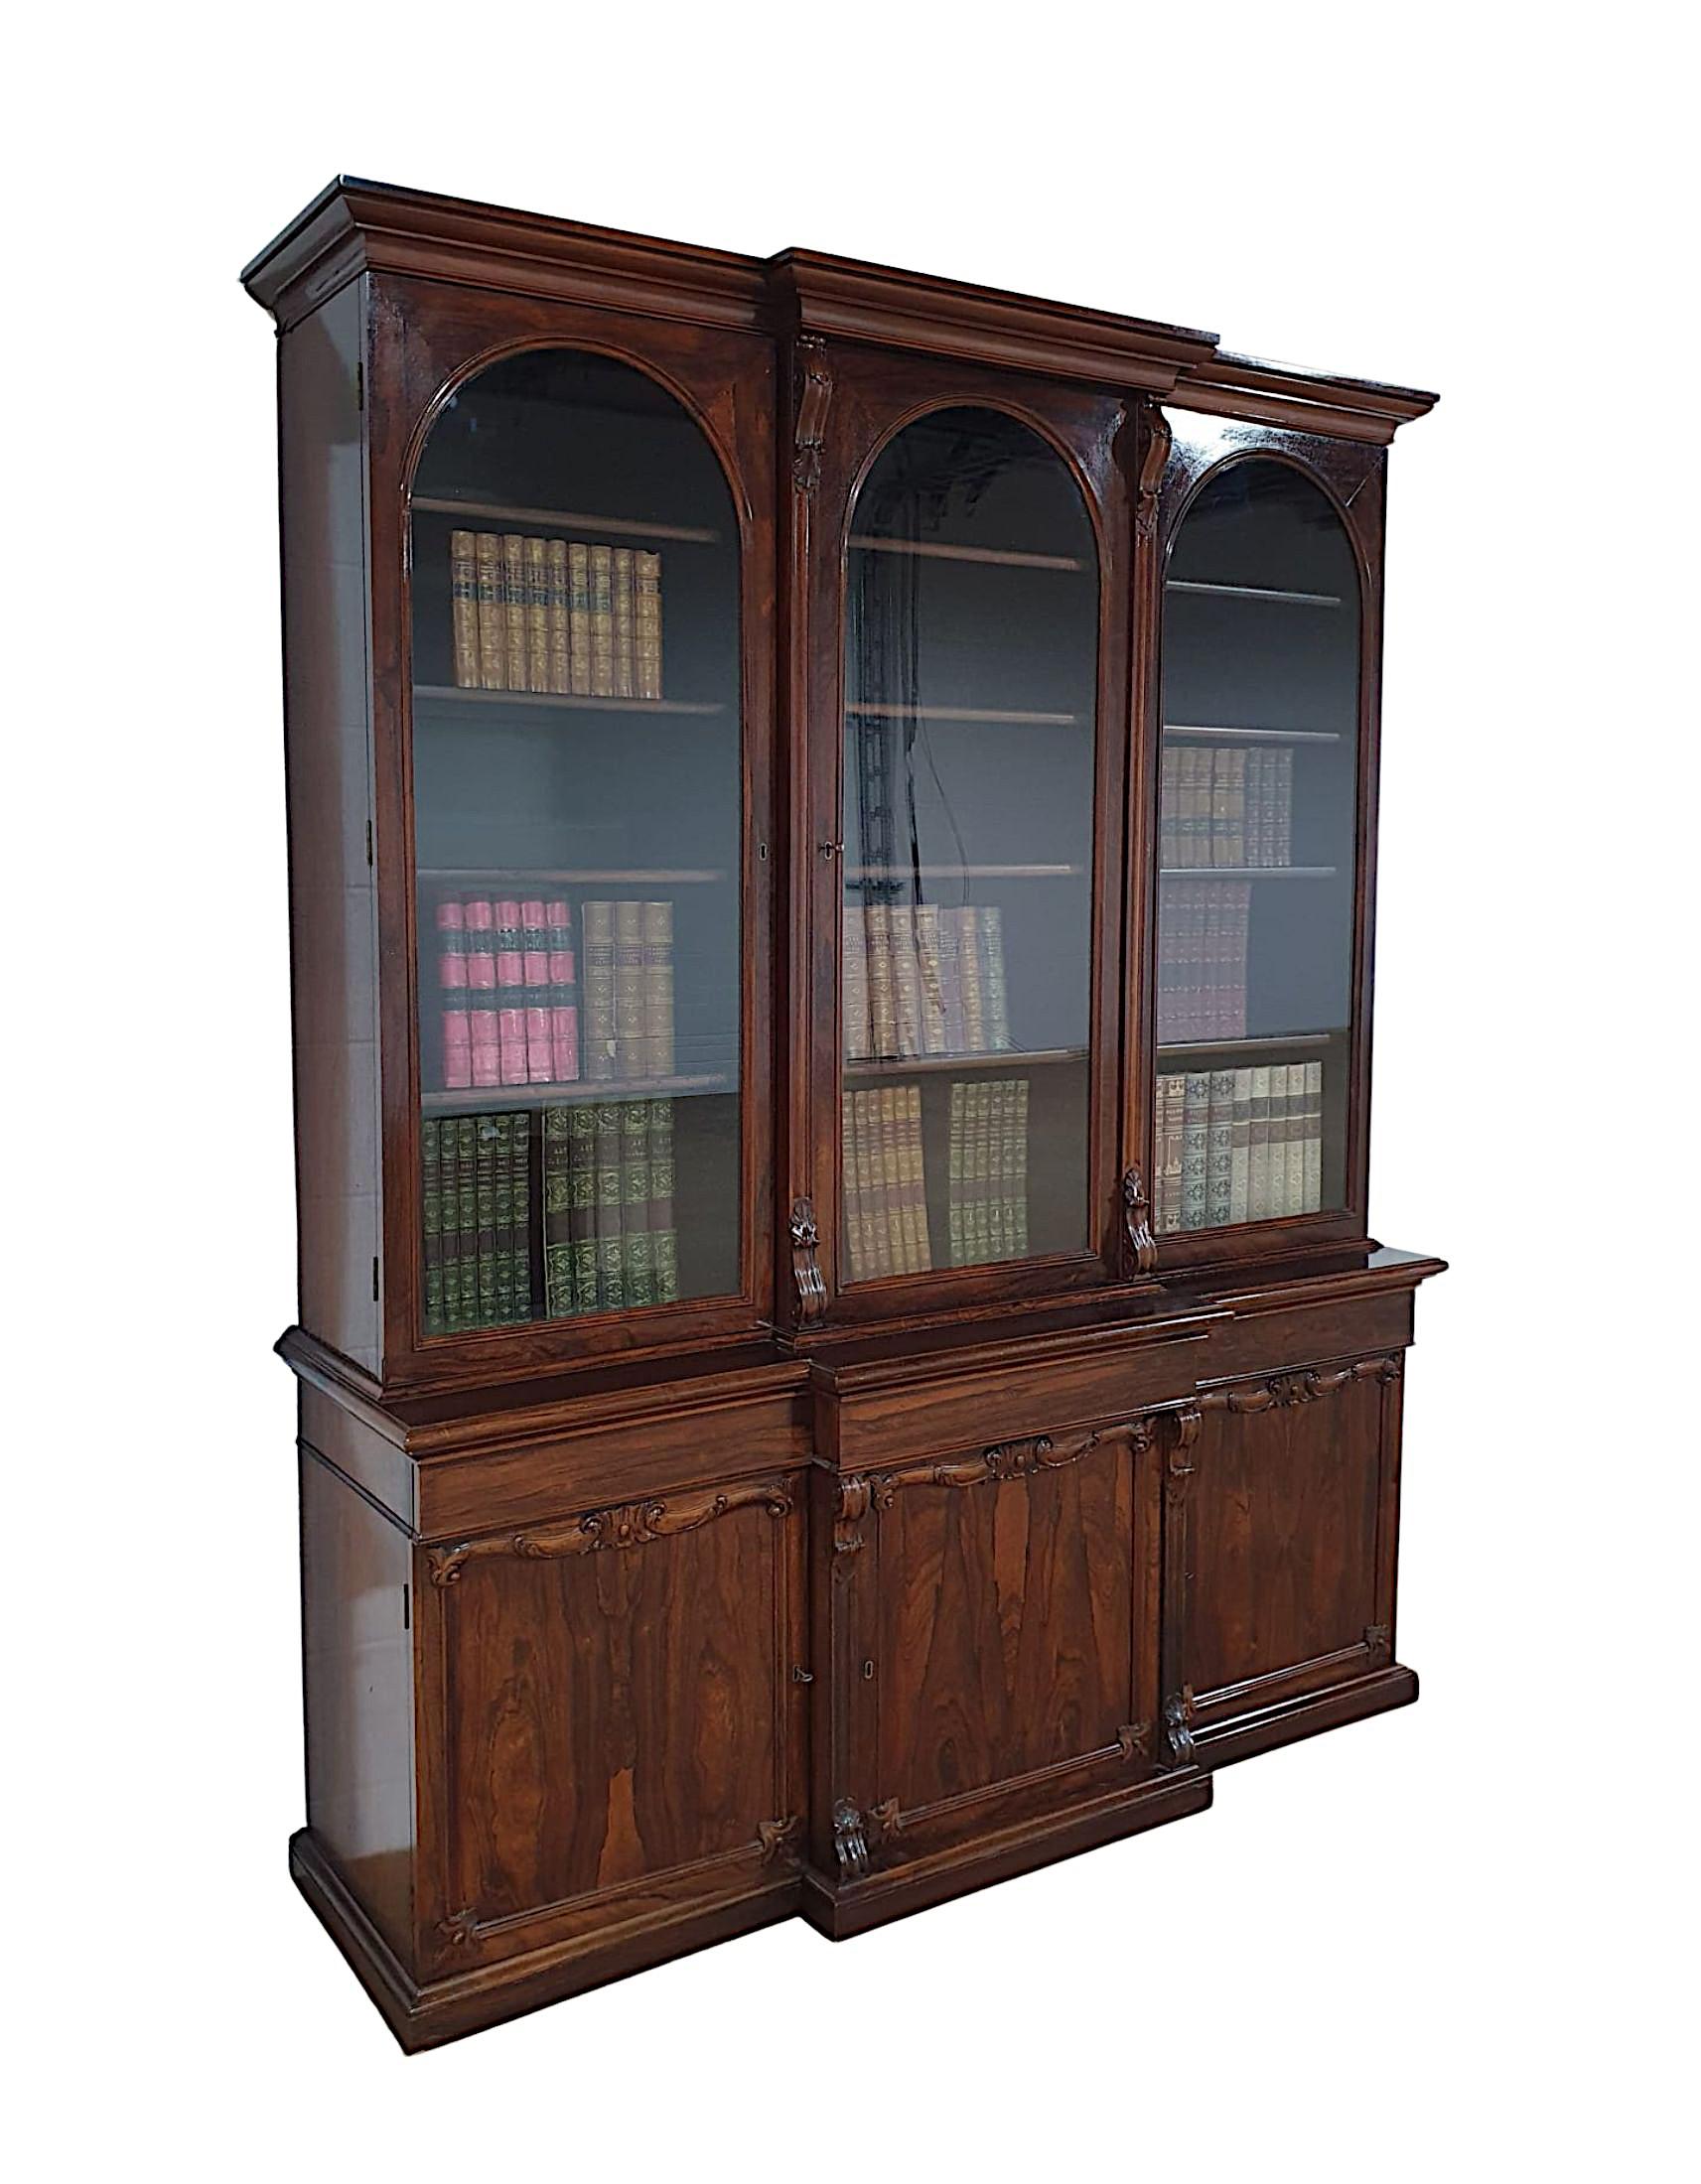 Ein sehr schöner dreitüriger Bücherschrank aus Obstholz aus dem 19. Jahrhundert, wunderschön handgeschnitzt und mit einer reichen Patina. Der geformte, gestufte Kavetto-Giebel erhebt sich über drei einfach verglasten Glastüren mit prächtigen